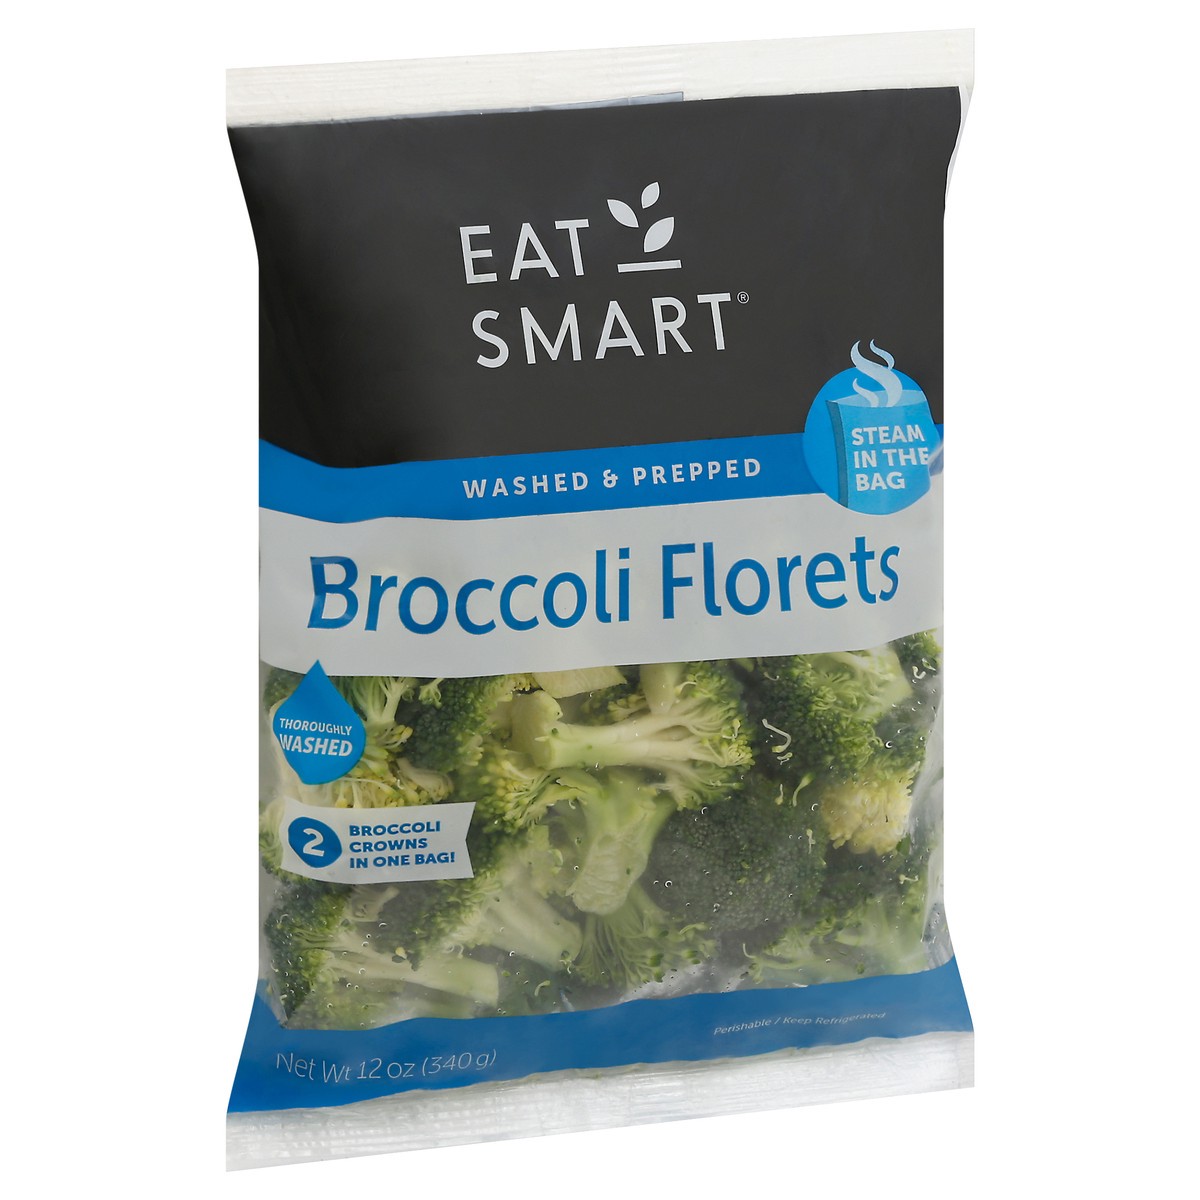 slide 11 of 13, Eat Smart Steam in the Bag Broccoli Florets 12 oz, 12 oz